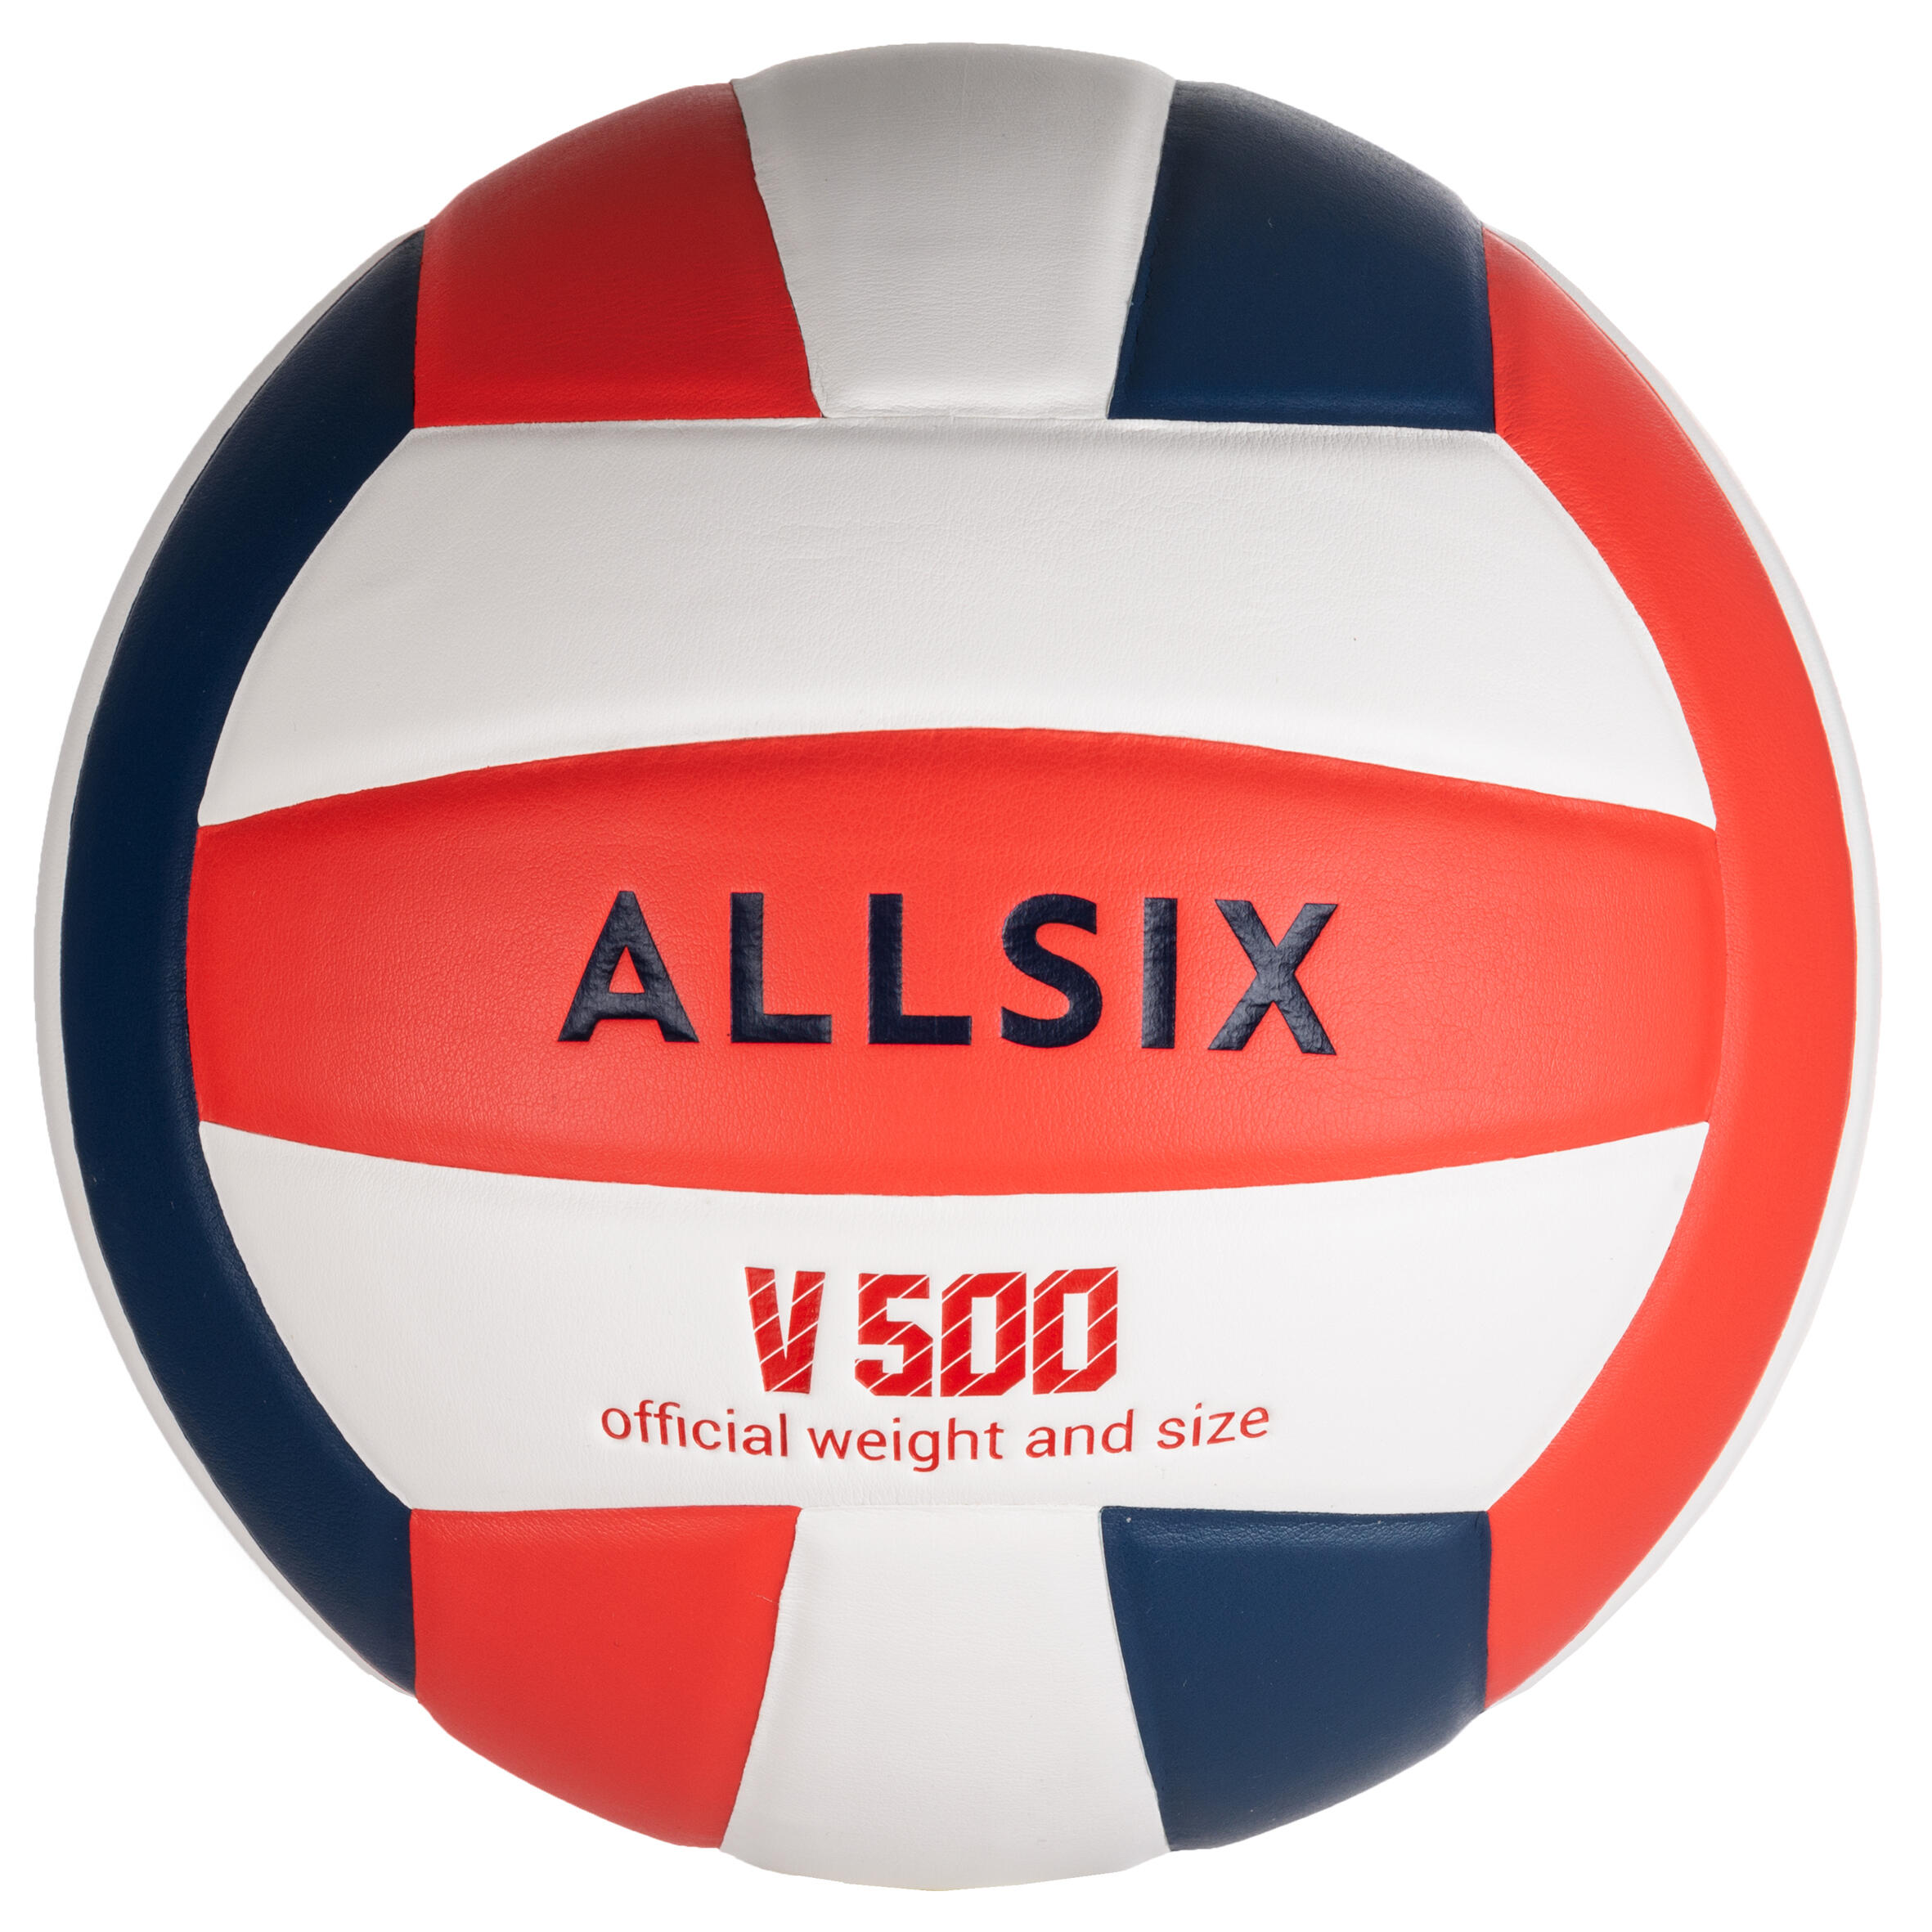 V300 Volleyball ALLSIX - Decathlon